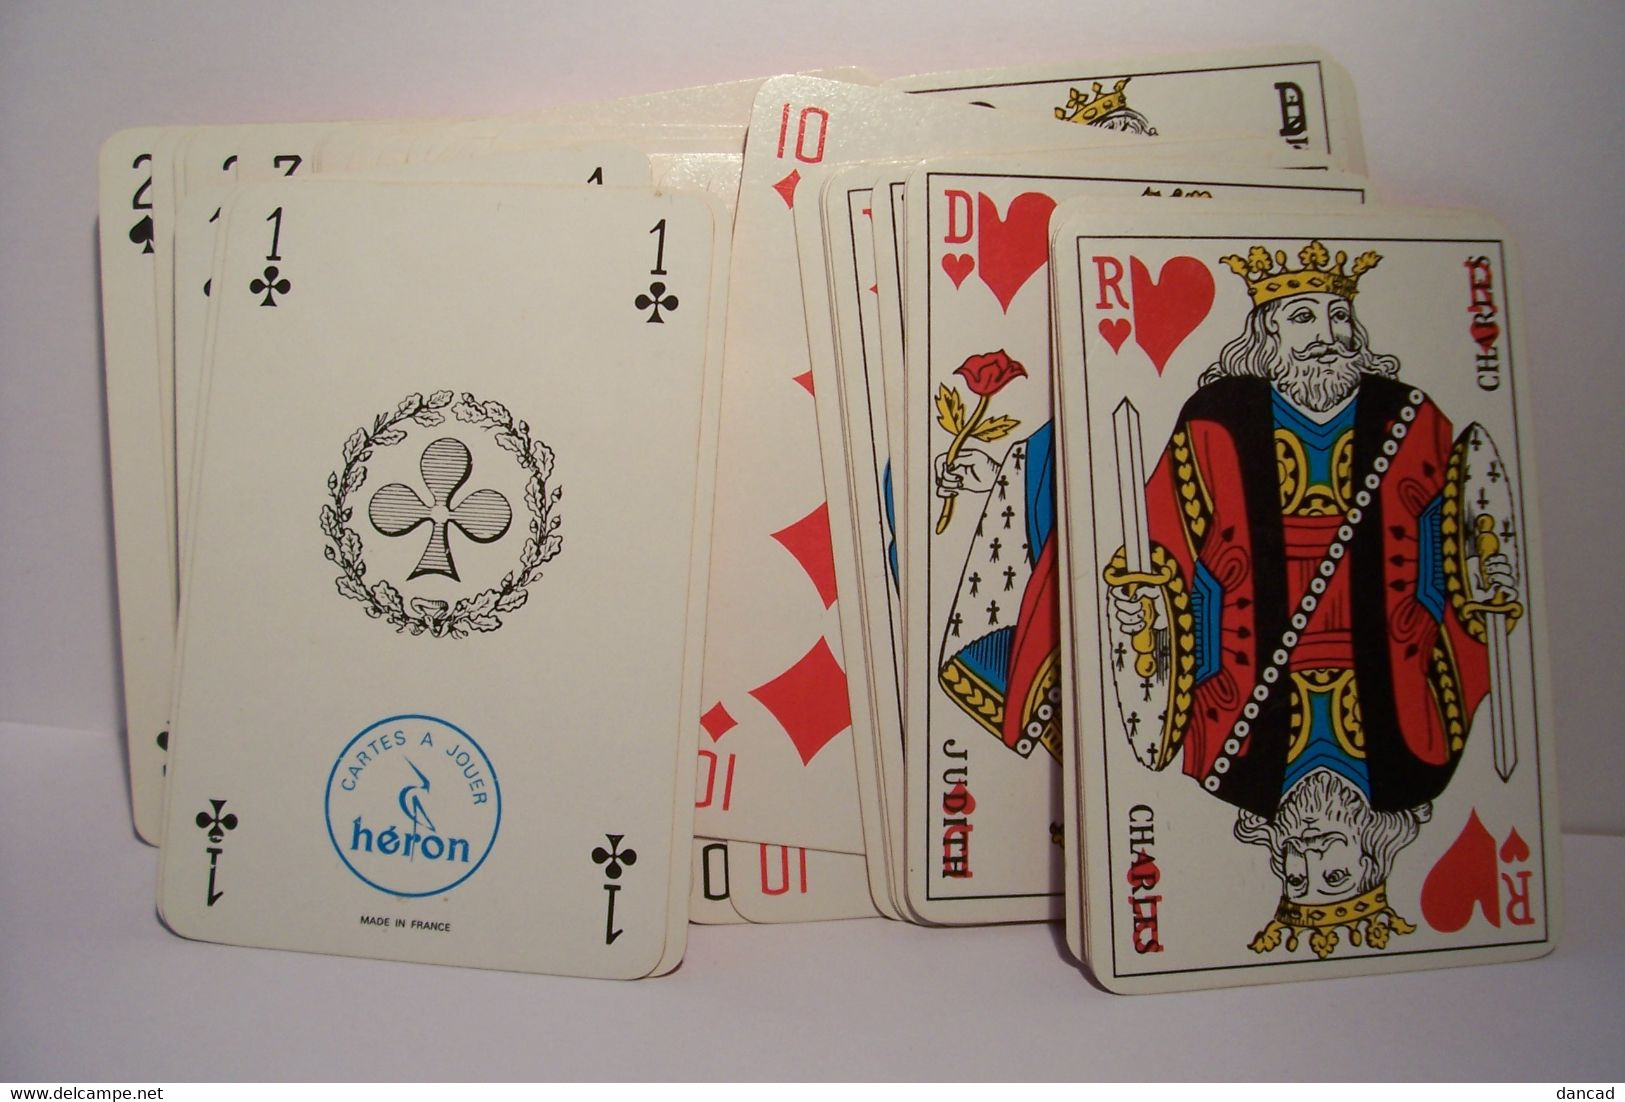 LA  BONNAL   ( La Chaussette  C'est )    - JEU DE 54 CARTES  ( Dont  2 Jokers)   - PUBLICITE - 54 Cards